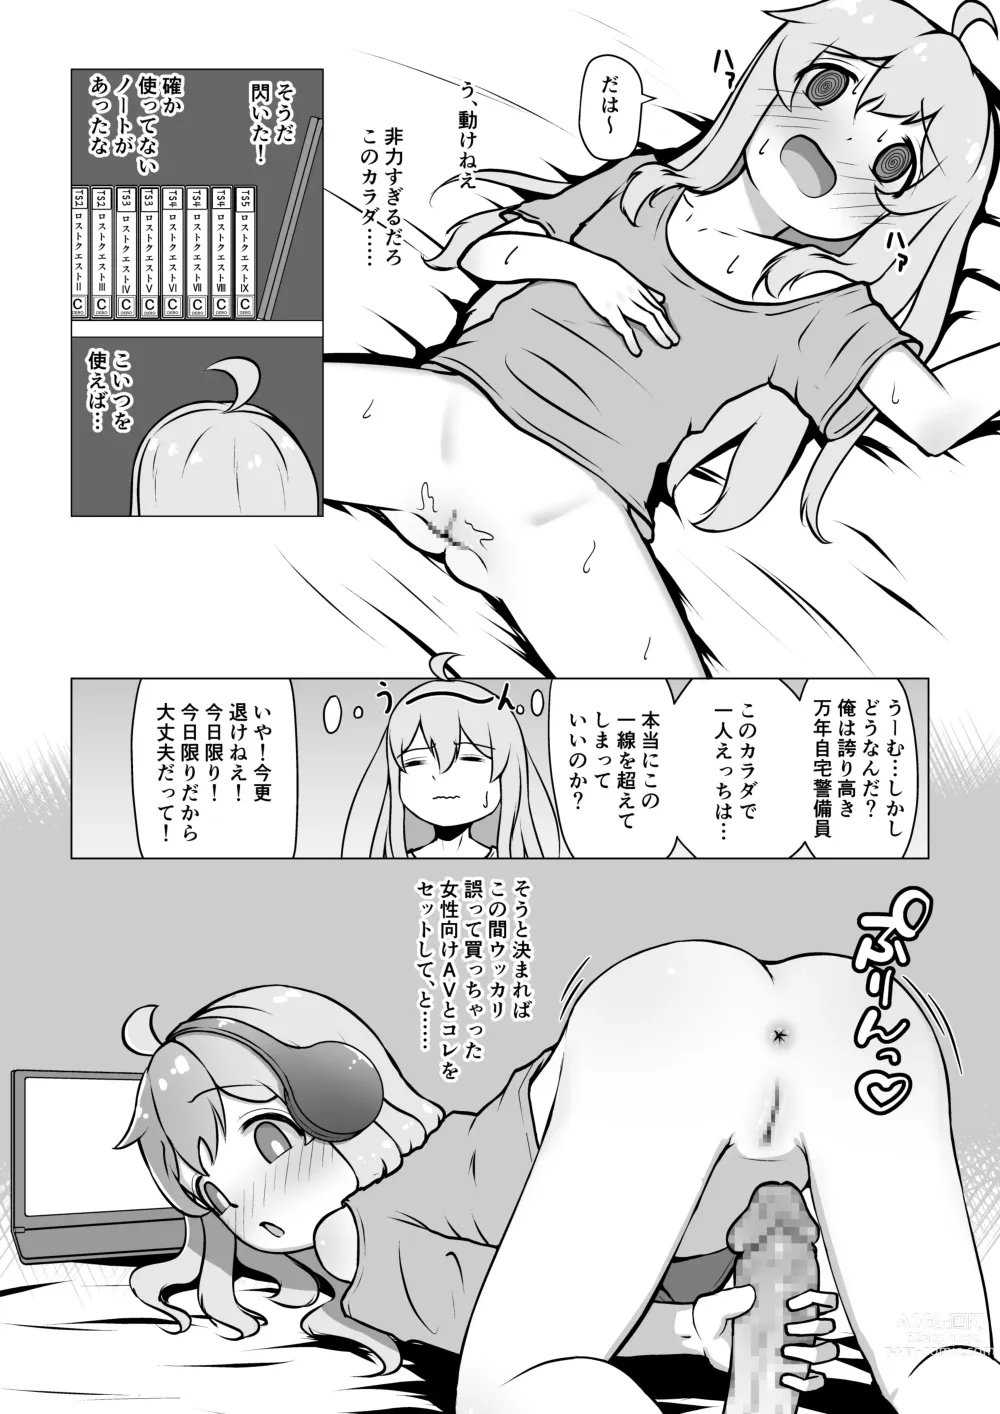 Page 6 of doujinshi Onii-chan, Owaru